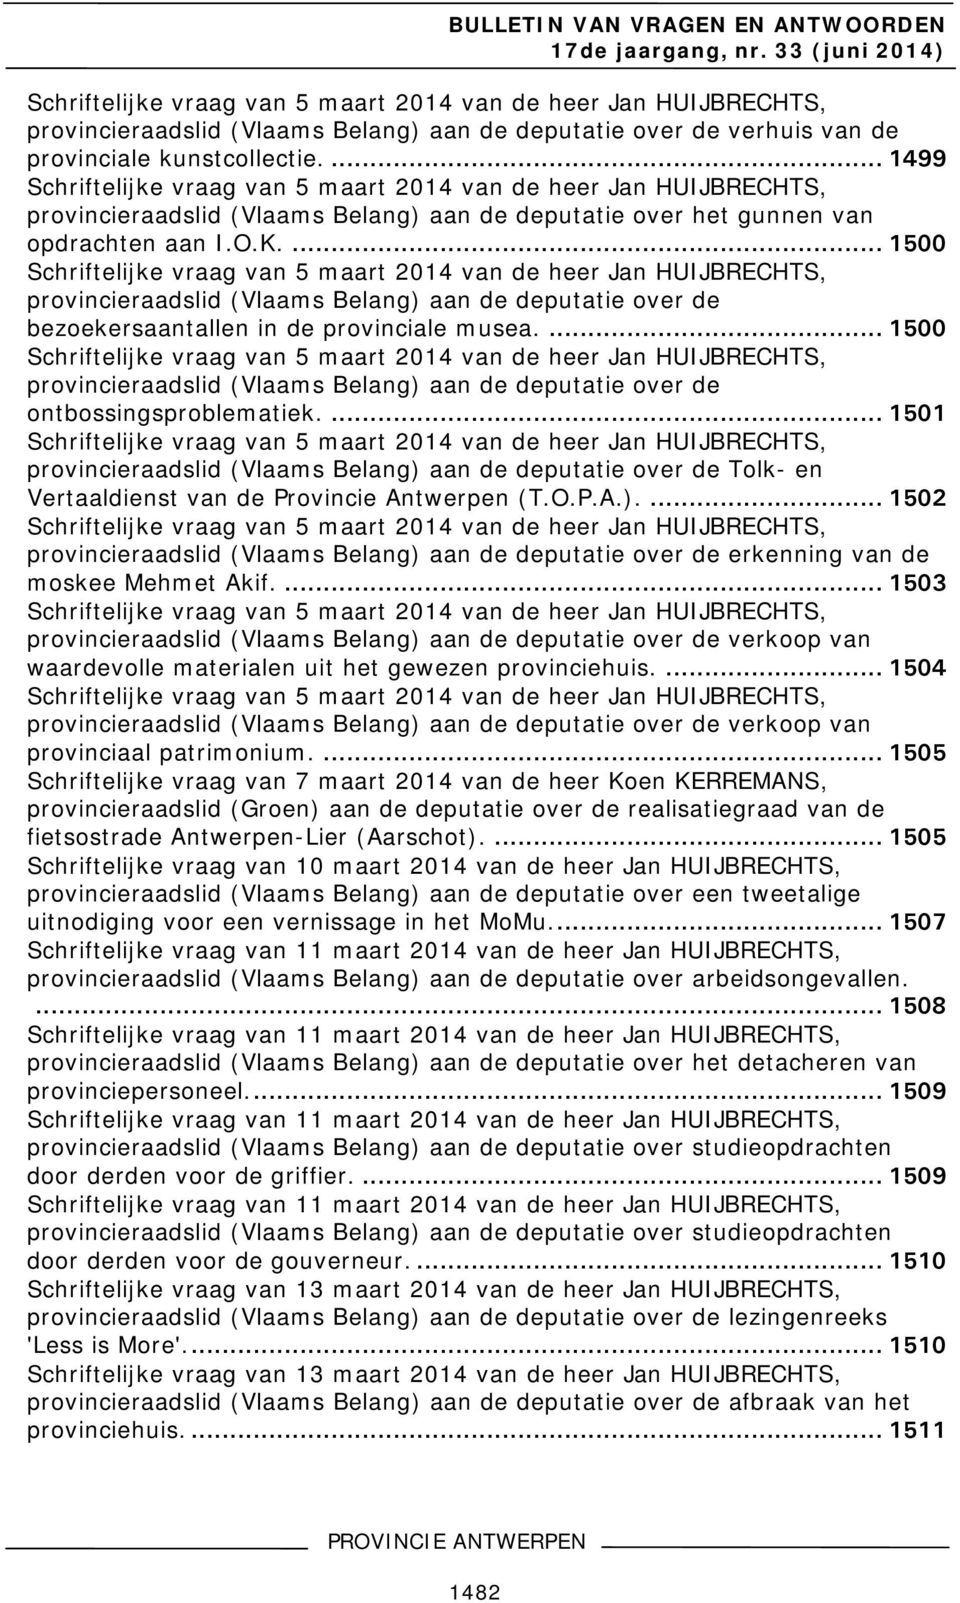 ... 1500 Schriftelijke vraag van 5 maart 2014 van de heer Jan HUIJBRECHTS, provincieraadslid (Vlaams Belang) over de bezoekersaantallen in de provinciale musea.